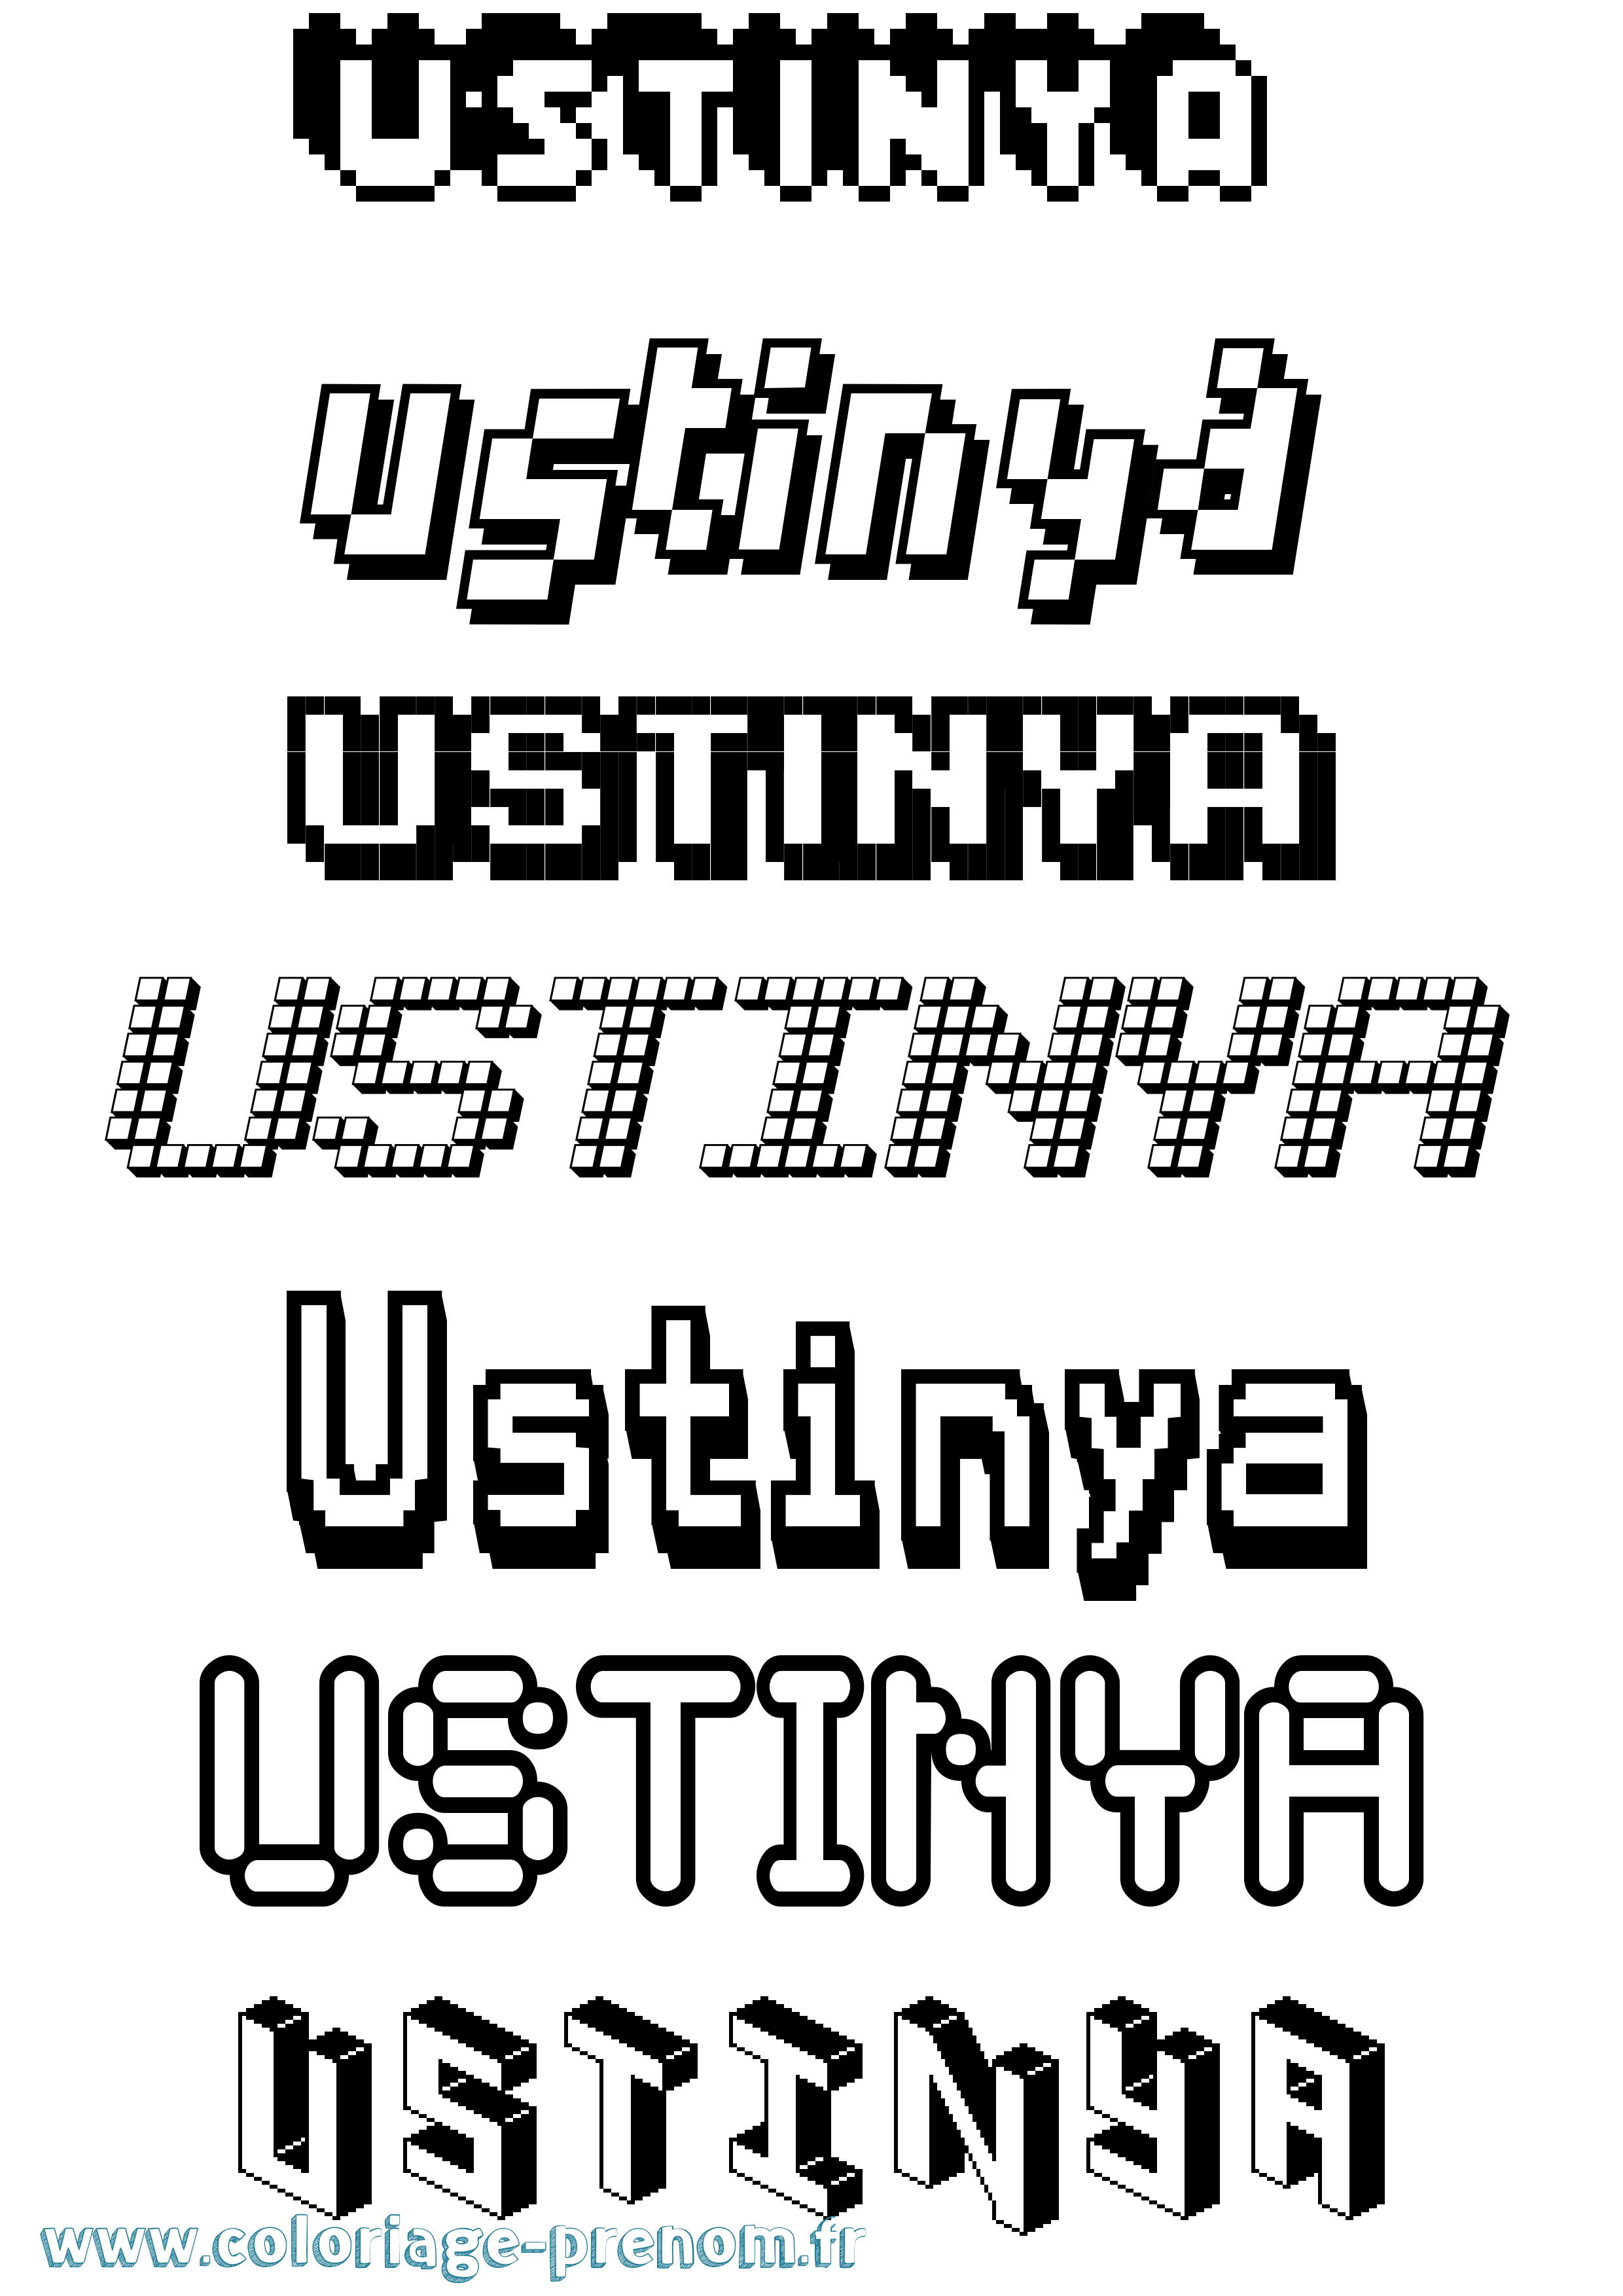 Coloriage prénom Ustinya Pixel